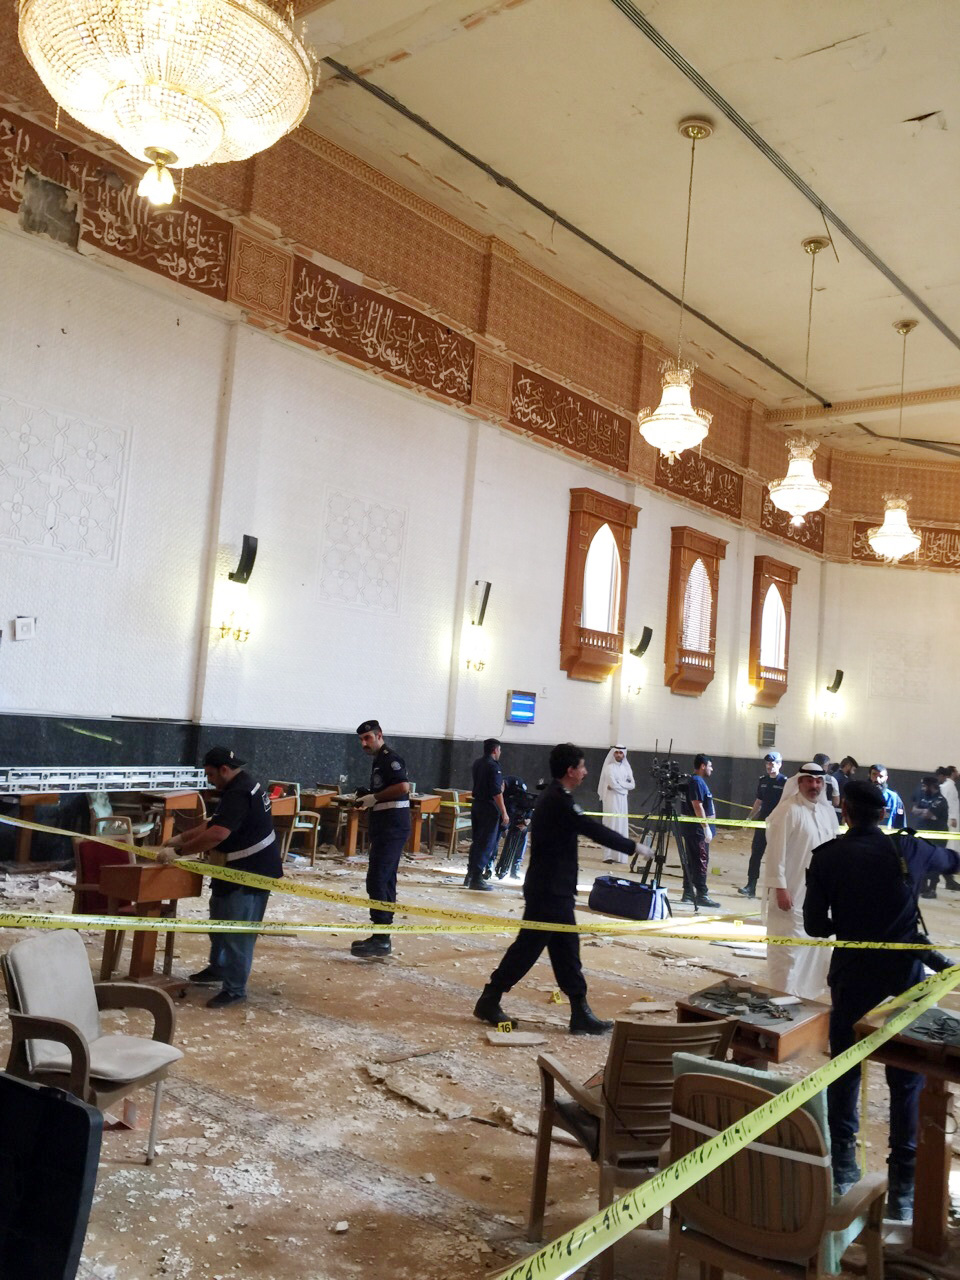 وقوع انفجار في مسجد الامام الصادق بمنطقة الصوابر وسط مدينة الكويت